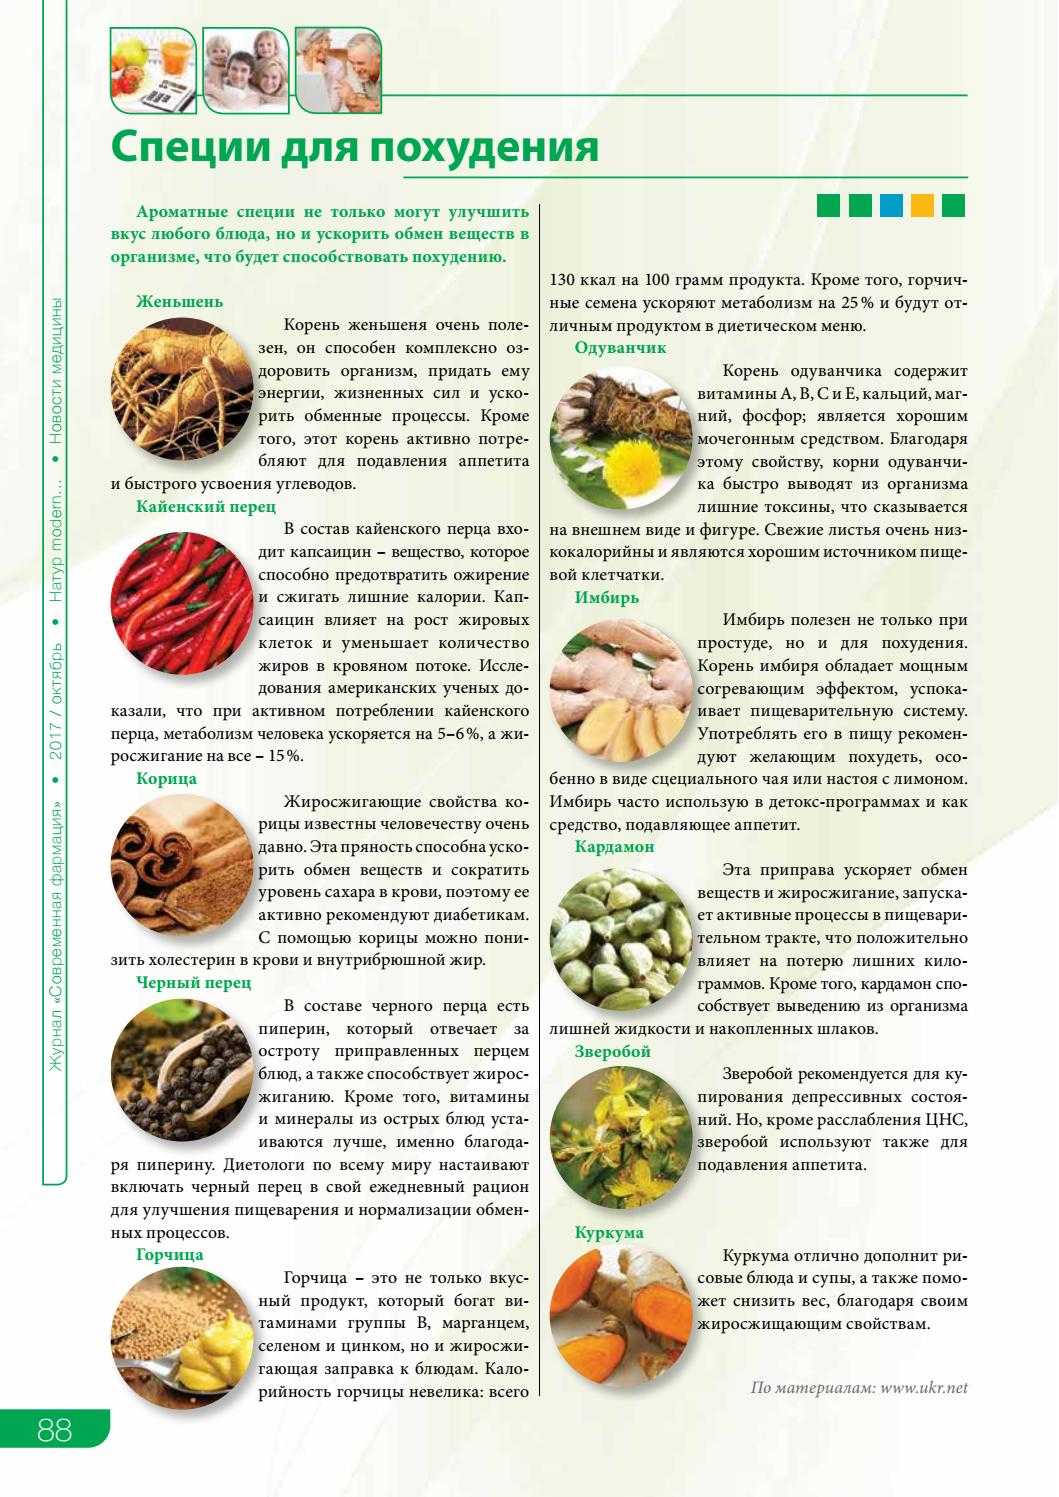 Как принимать семена льна для похудения: отзывы и рецепты